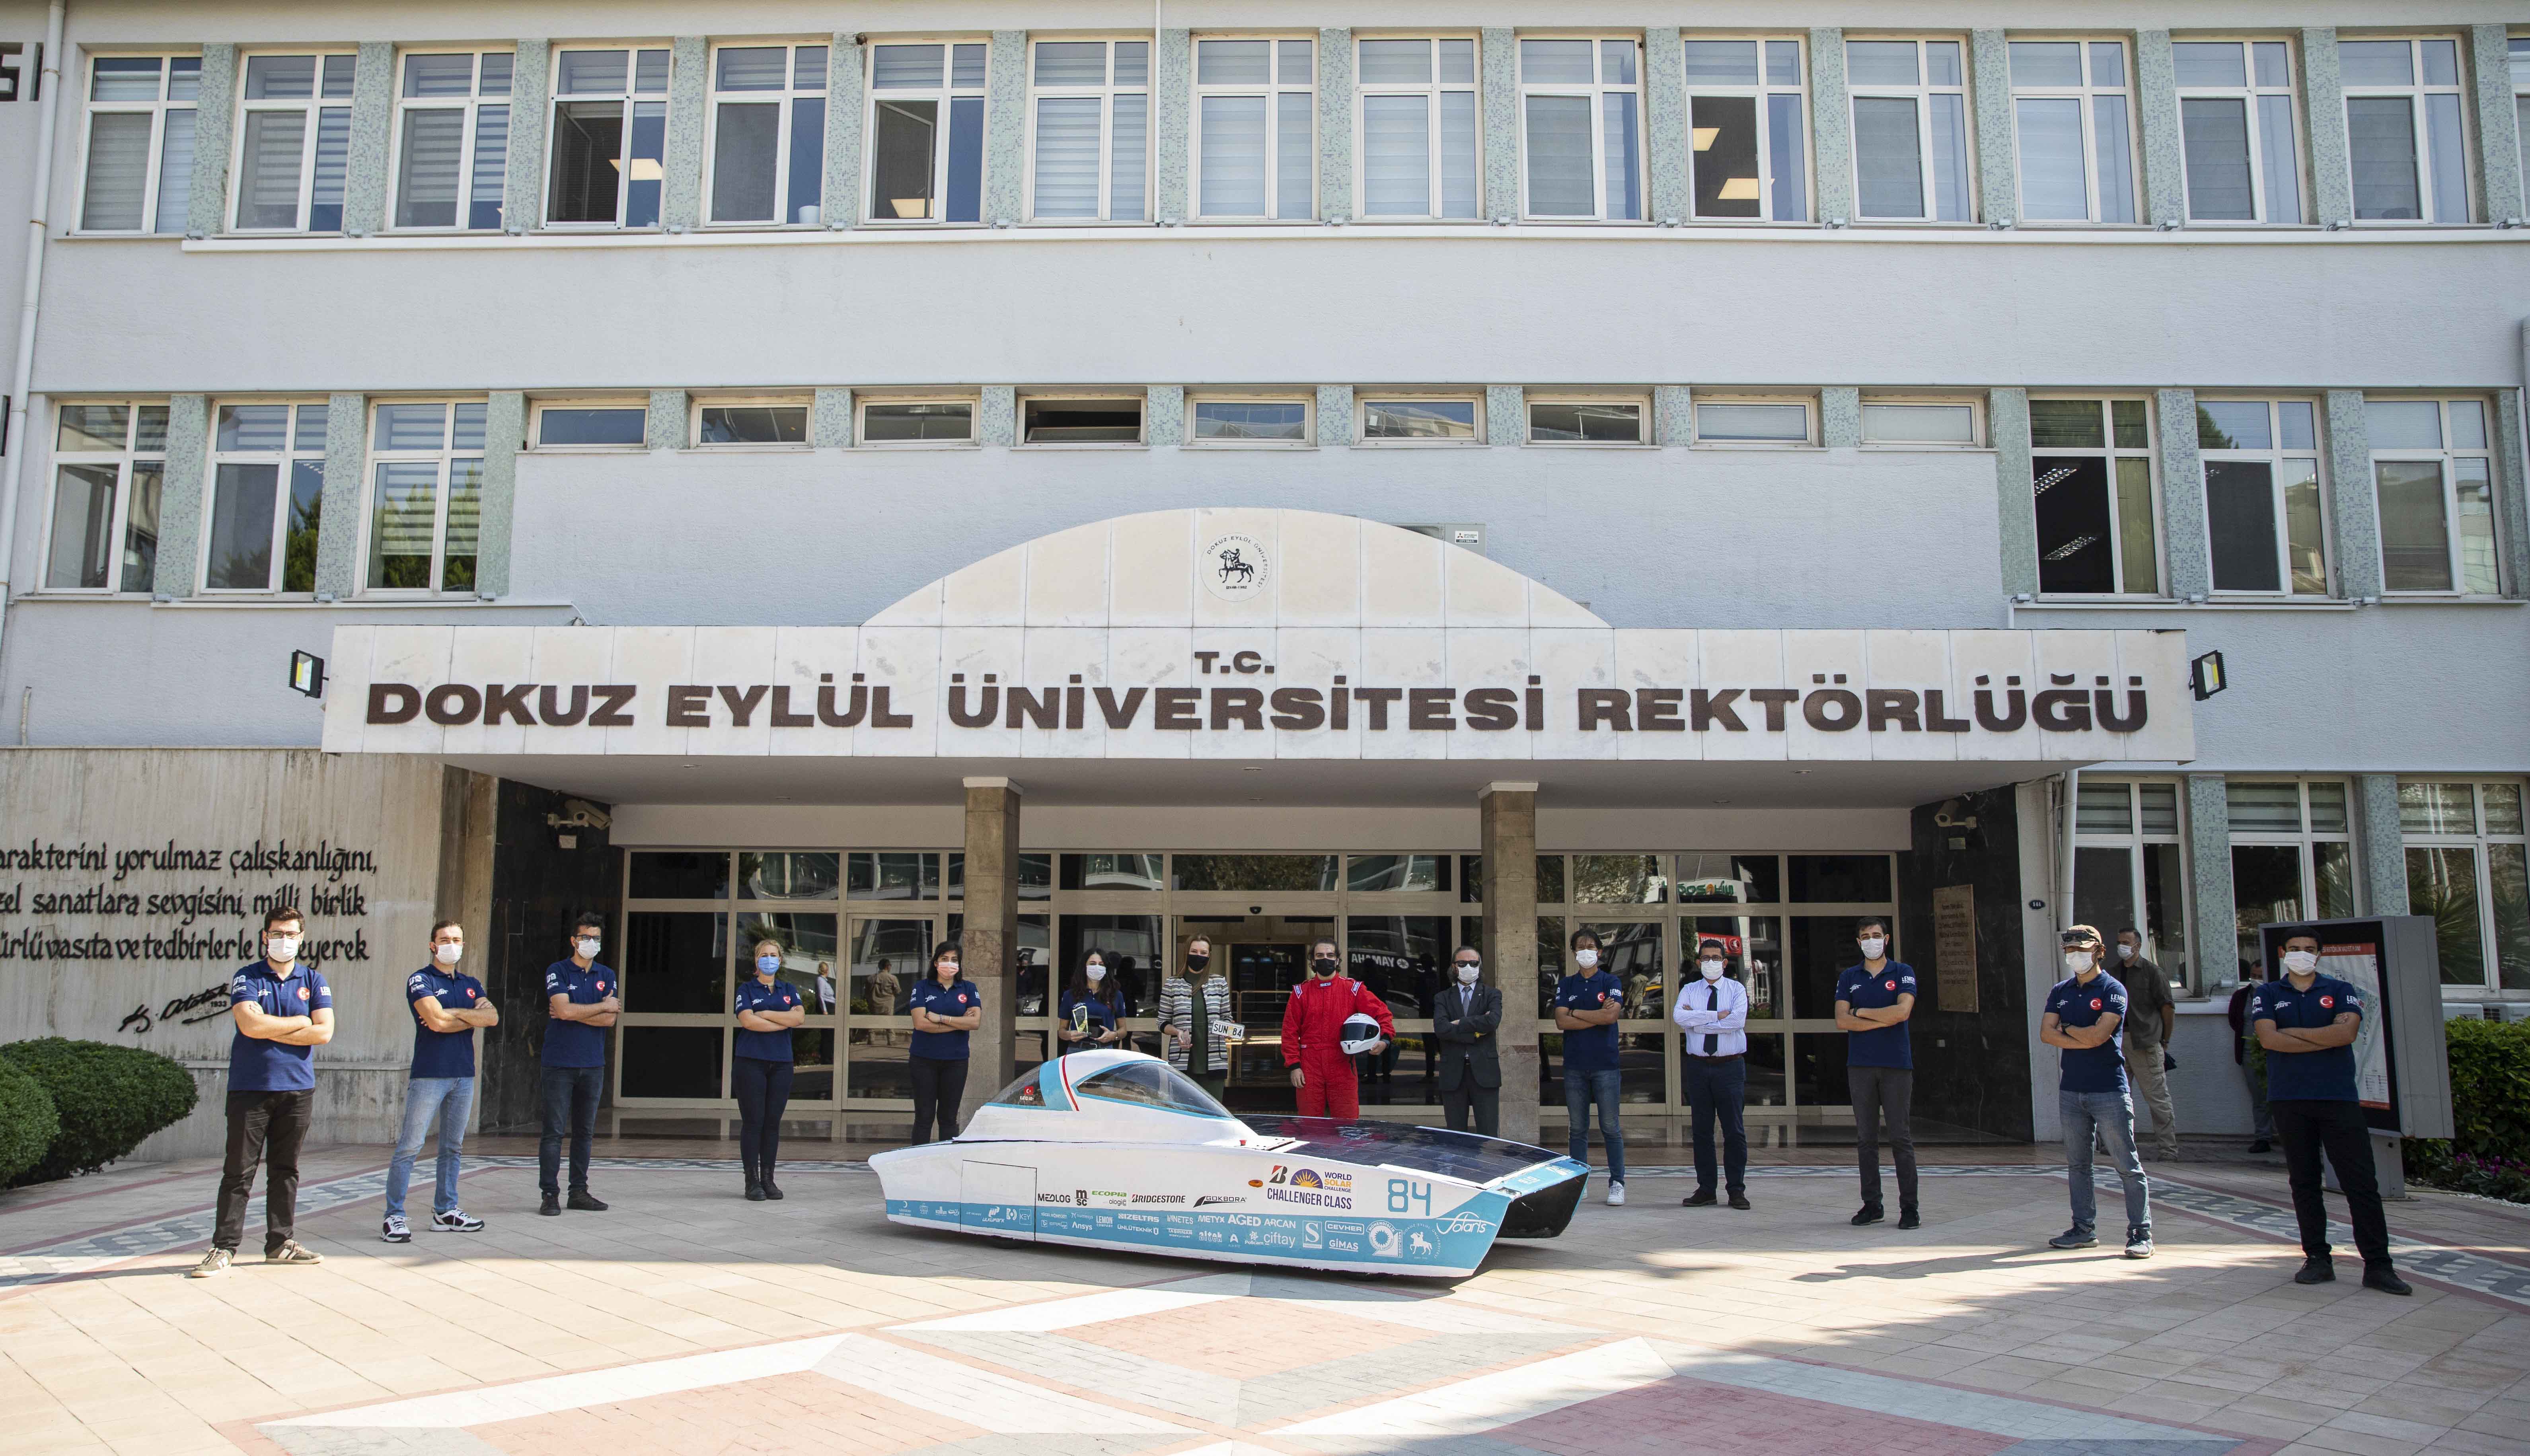 solaris gunes arabalari ekibi rektor hotar i ziyaret etti dokuz eylul universitesi haber portali